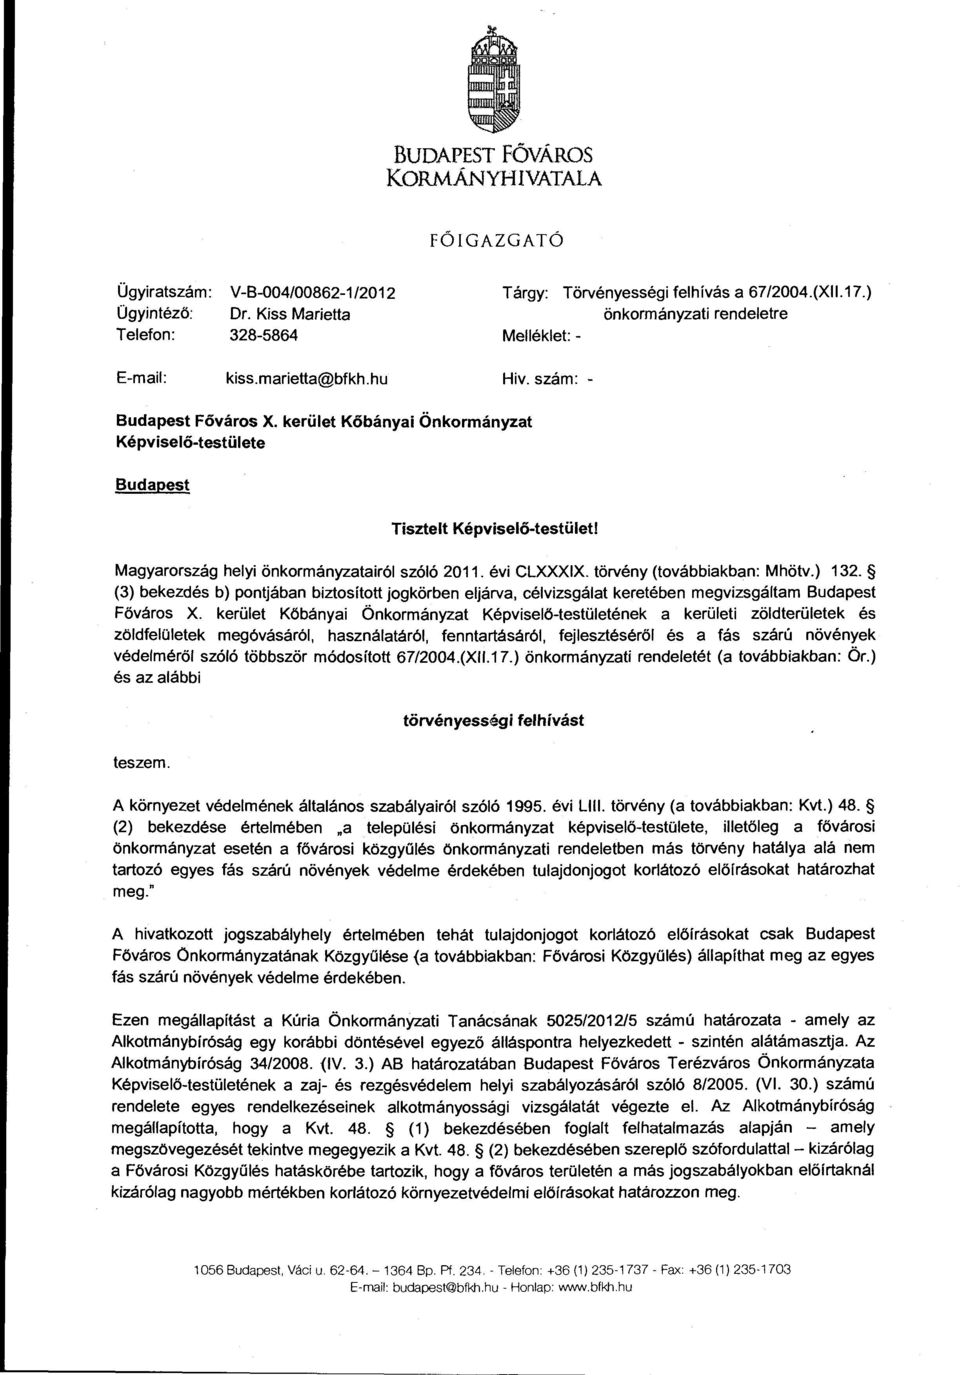 Magyarország helyi önkormányzatairól szóló 2011. évi CLXXXIX. törvény (továbbiakban: Mhötv.) 132.